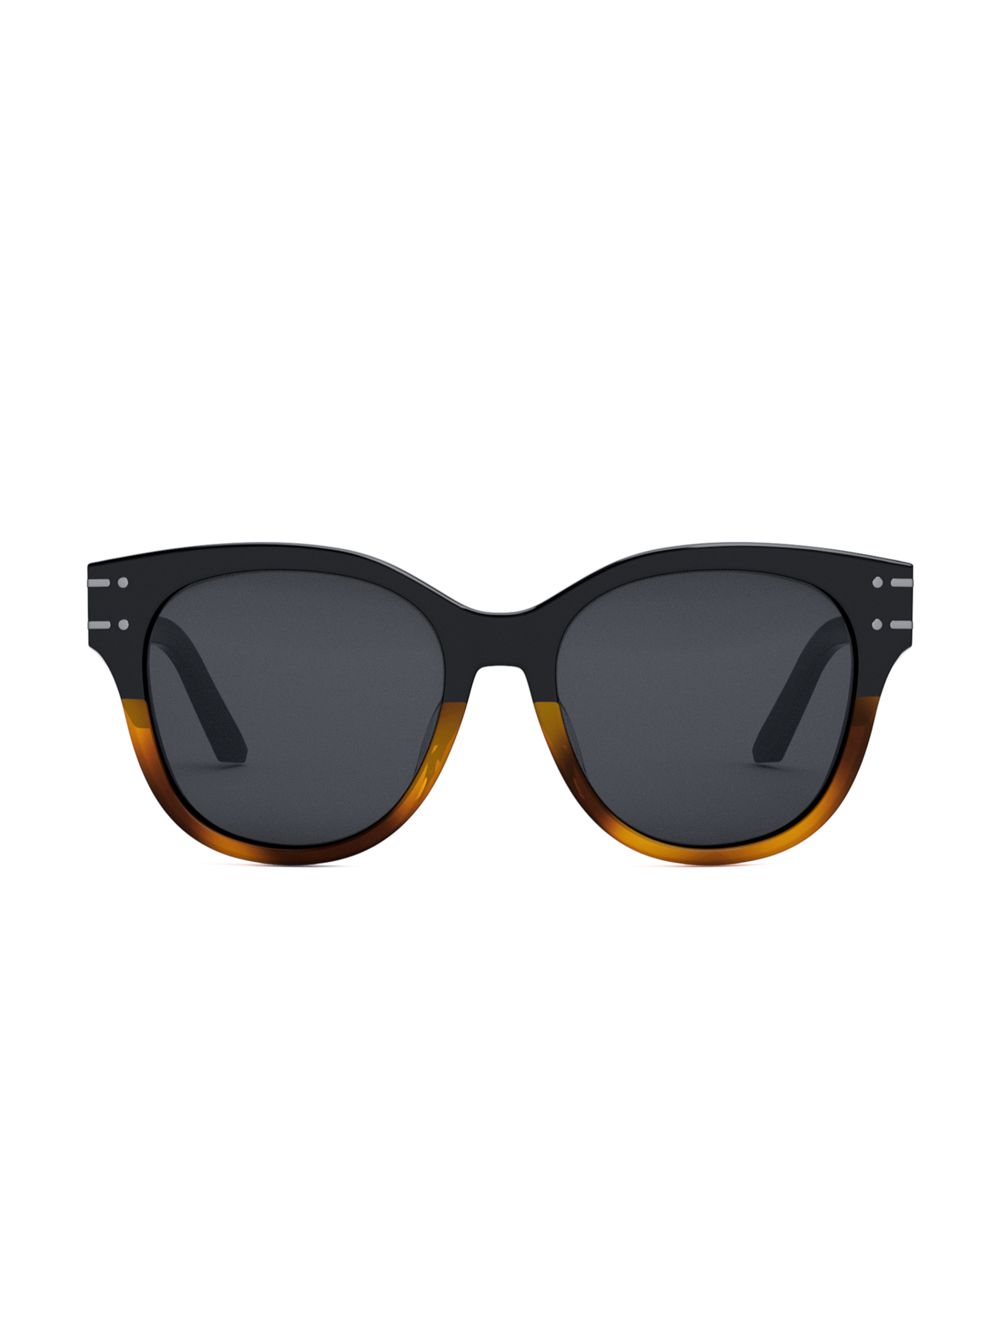 Солнцезащитные очки Diorsignature B6F 55MM в форме бабочки Dior, черный